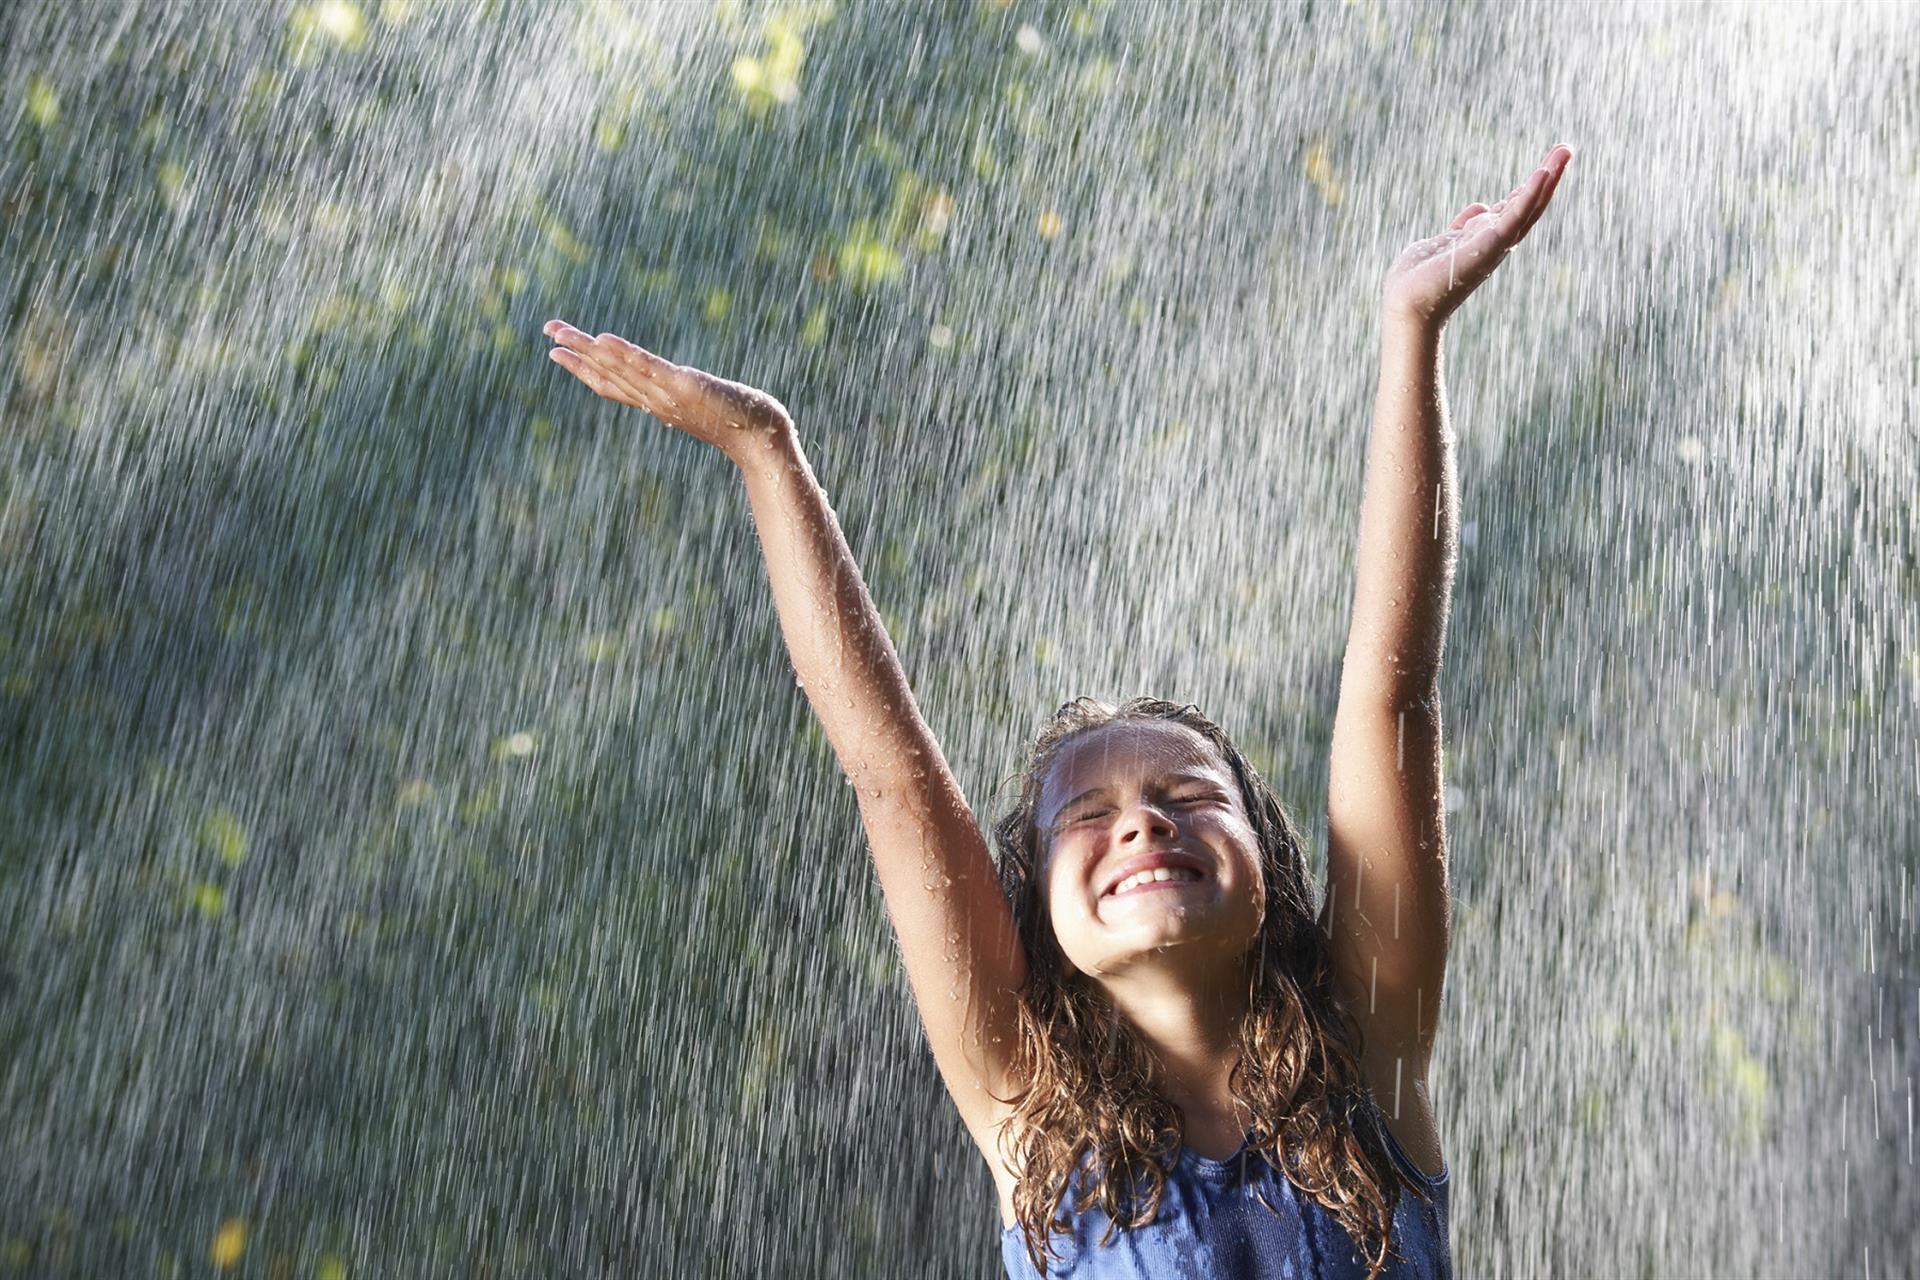 Girl playing in rain